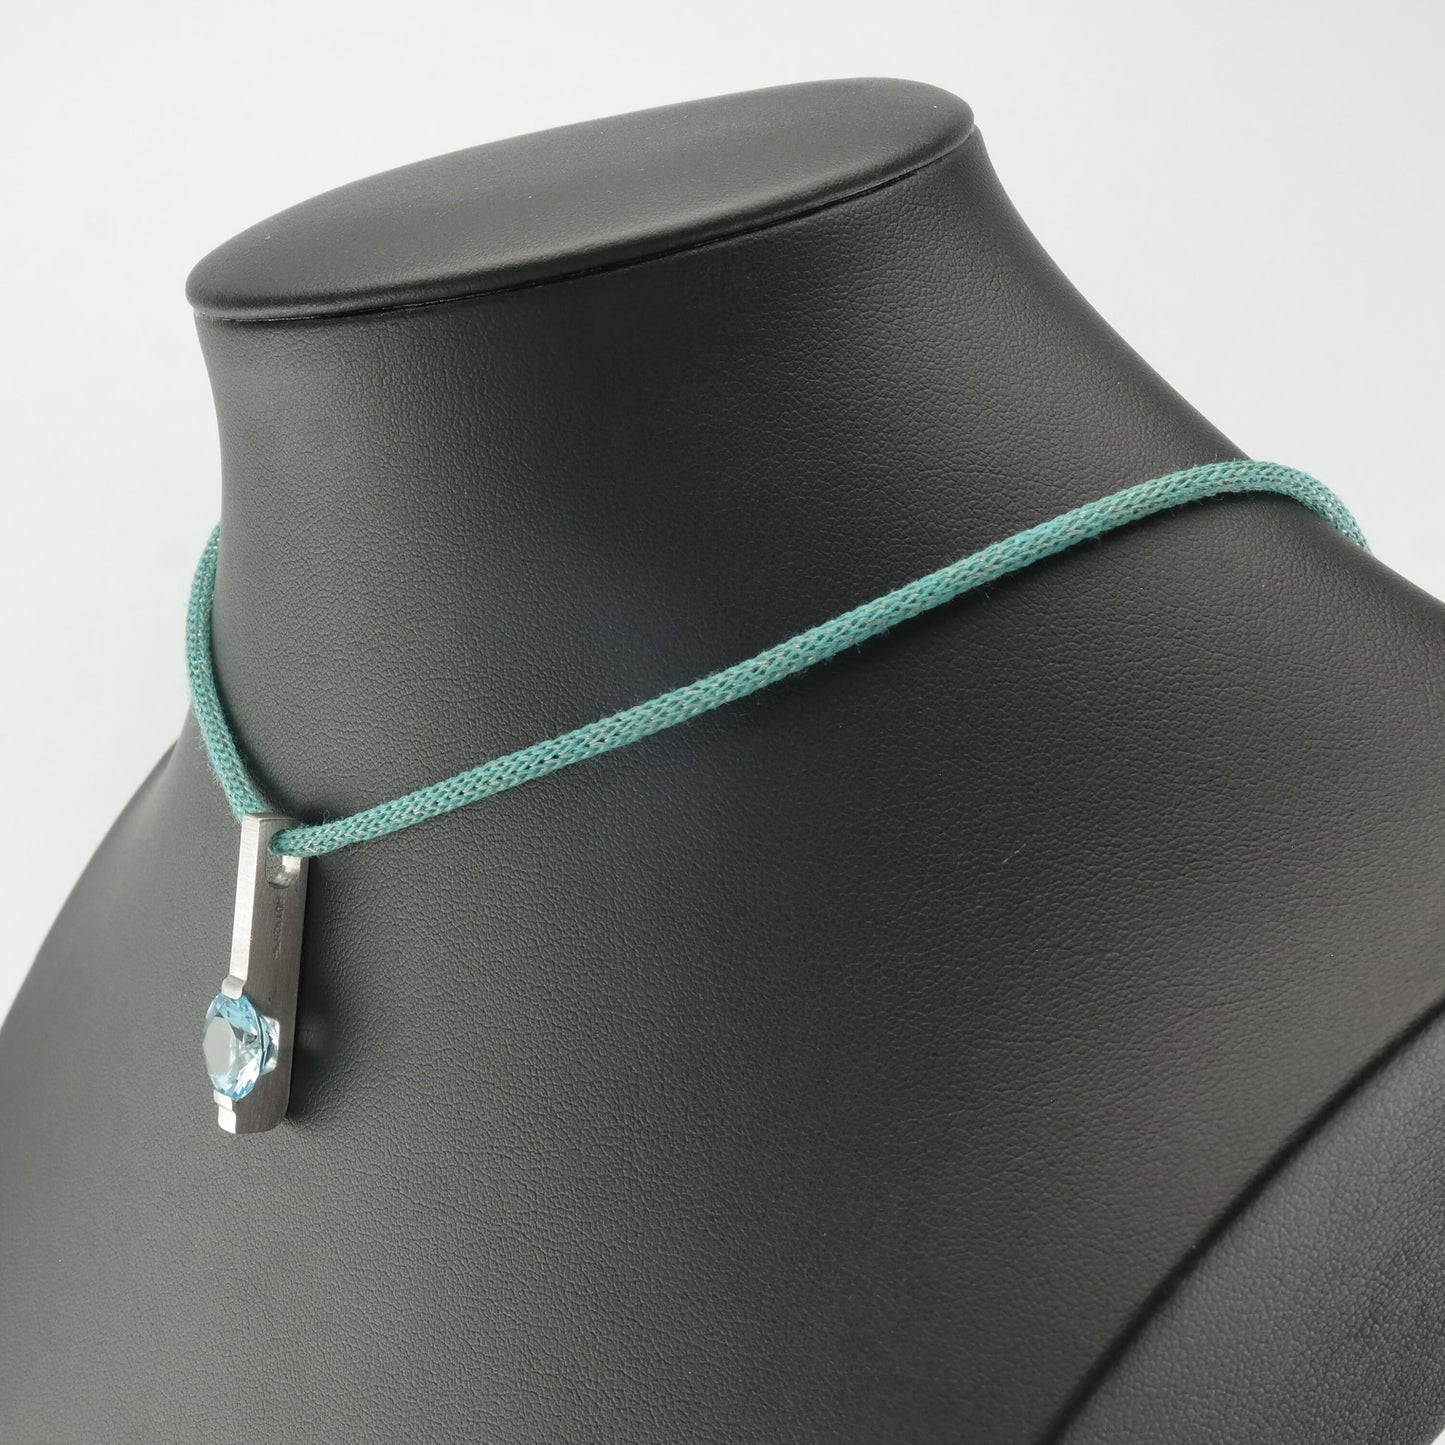 Vintage Modernist Sterling Silver Blue Topaz Blue Cord Necklace